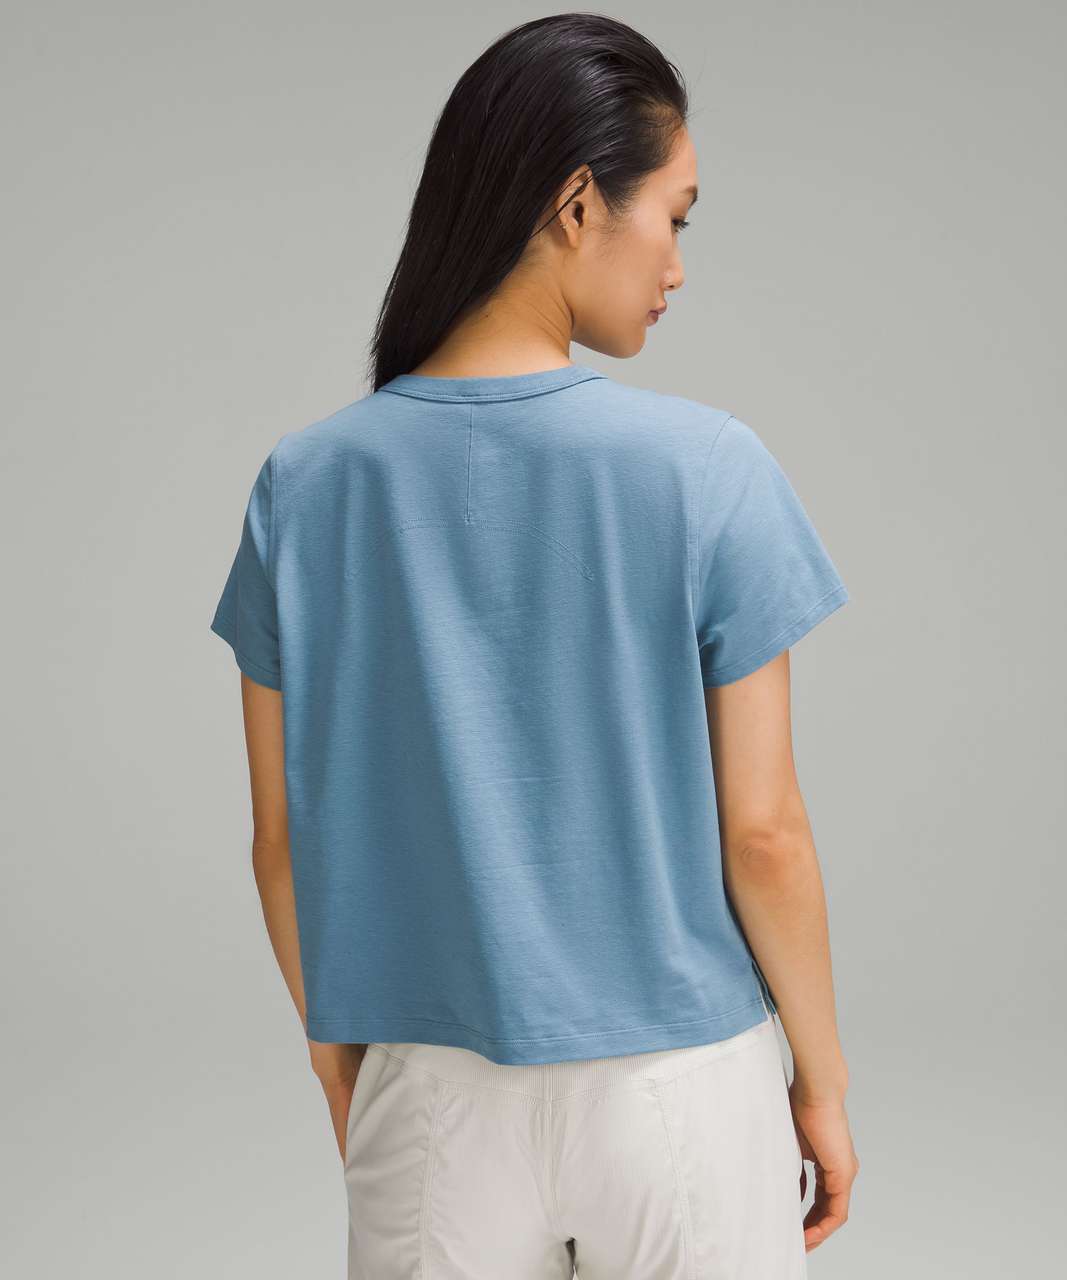 Lululemon Classic-Fit Cotton-Blend T-Shirt - Utility Blue